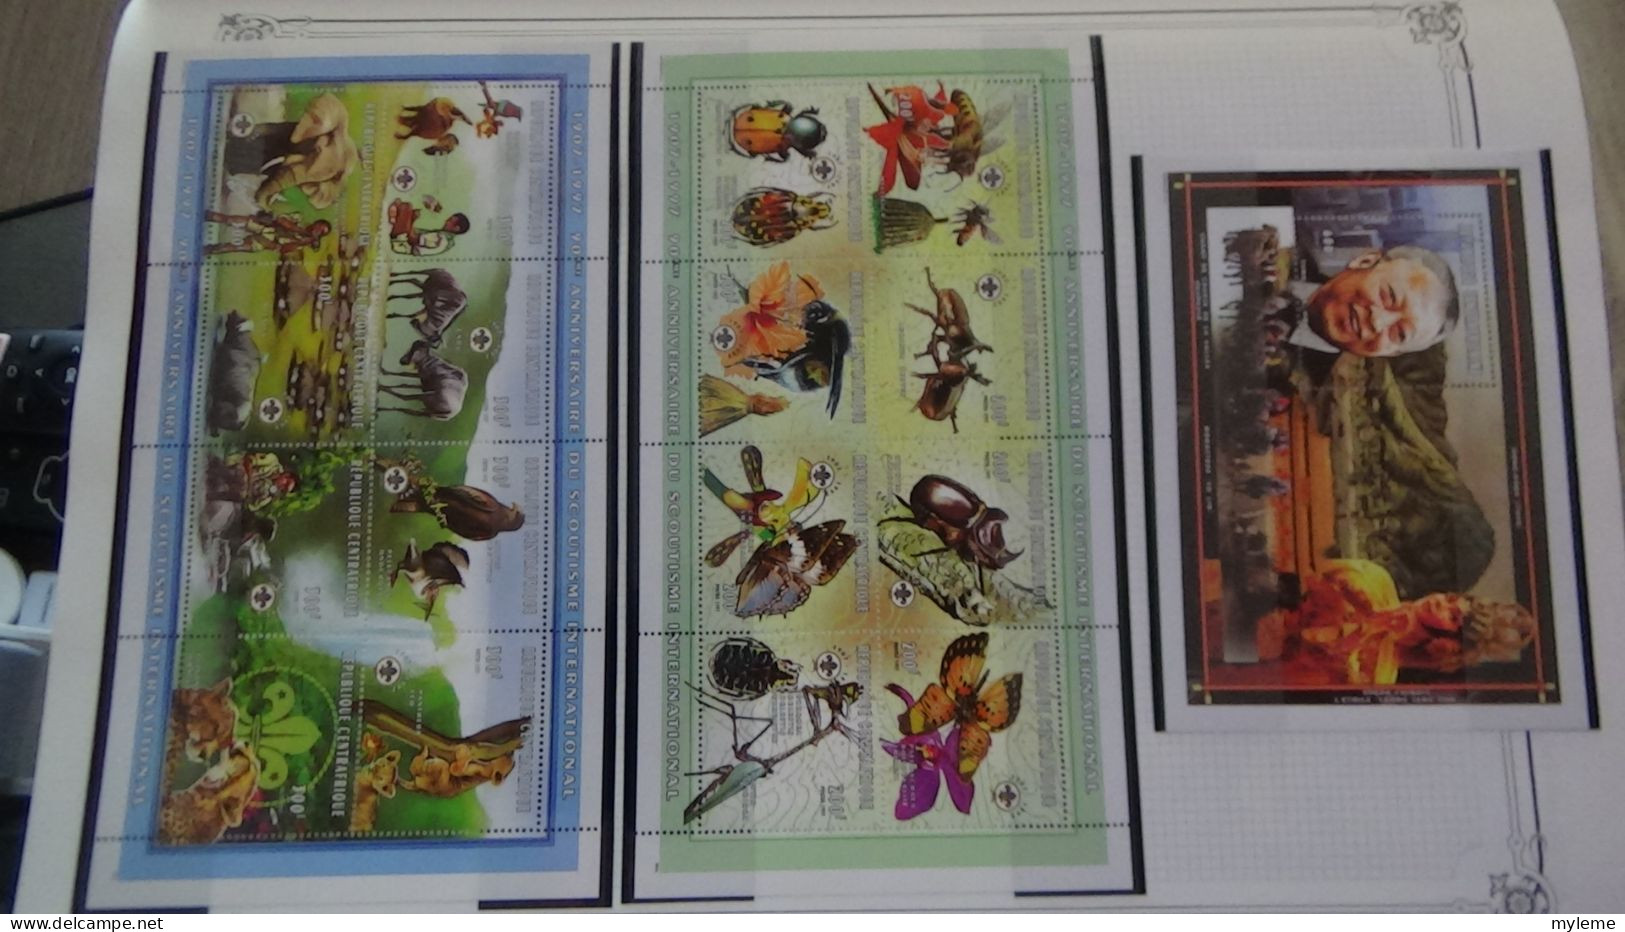 BC102 Collection de timbres et blocs ** de Centrafrique sur feuille d'album.  A saisir !!!